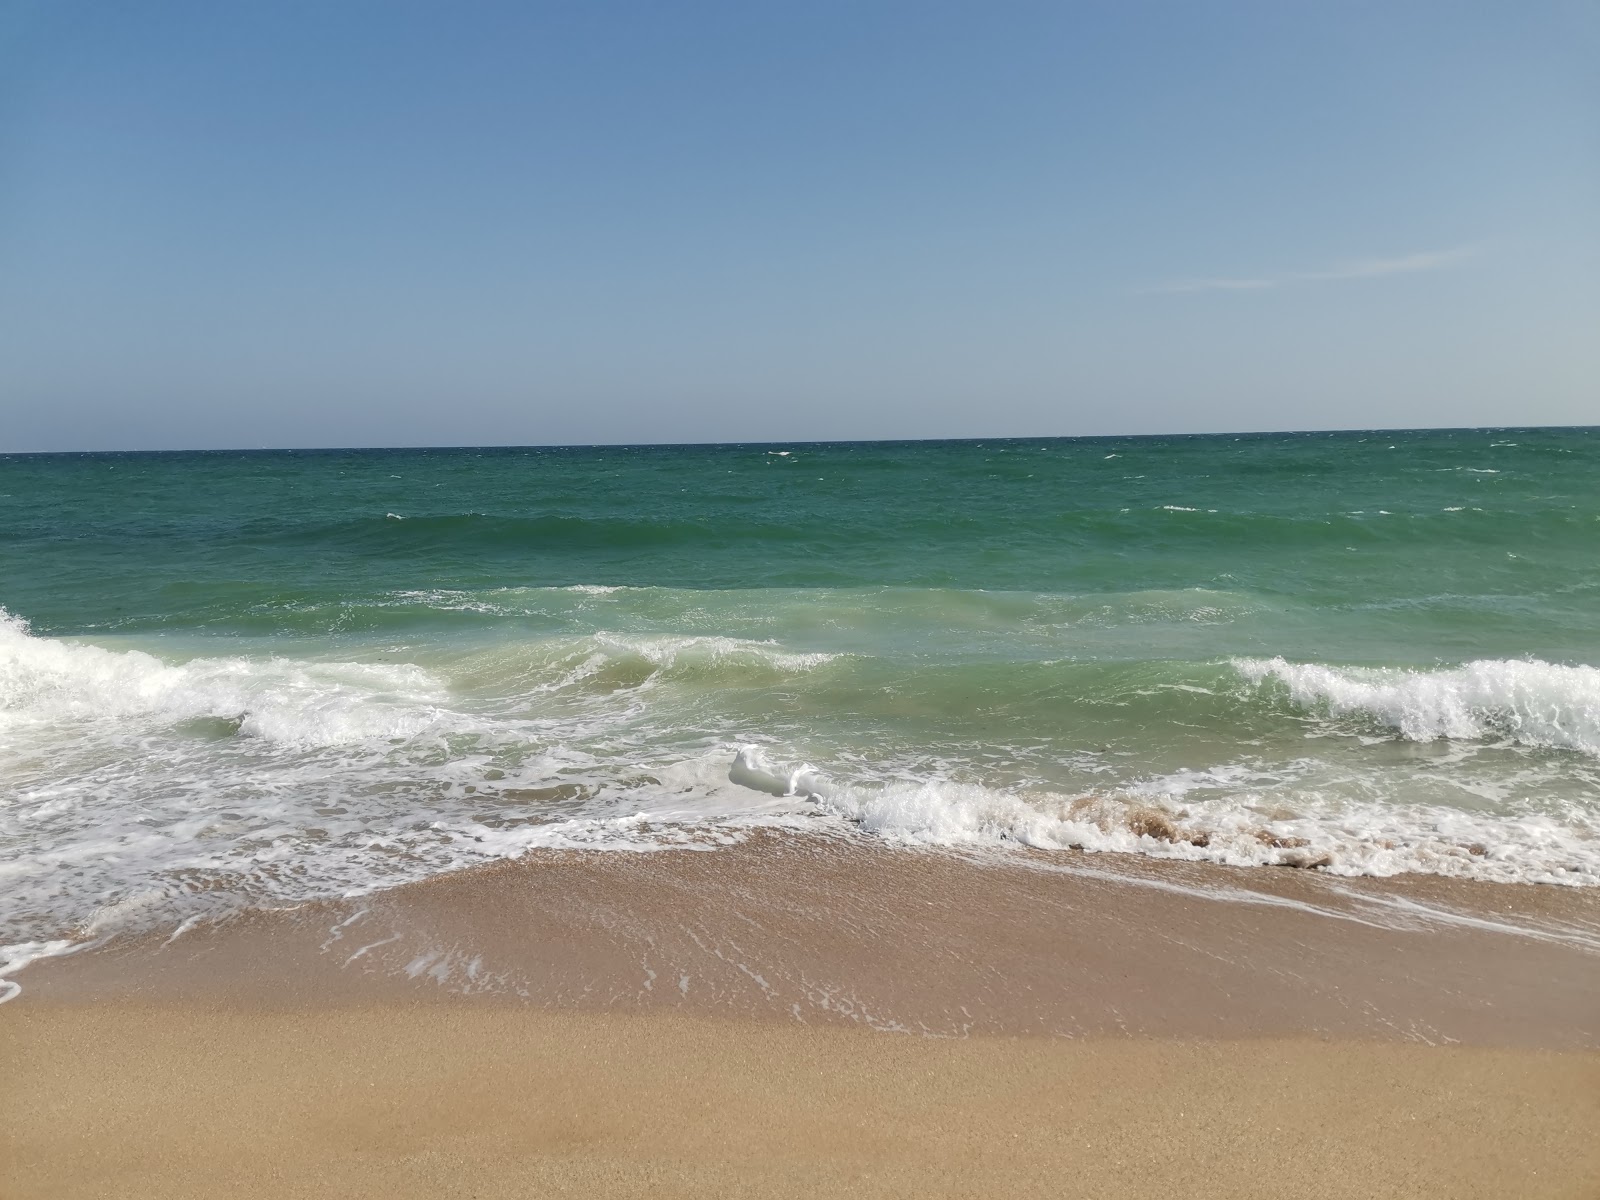 Boeme beach'in fotoğrafı - rahatlamayı sevenler arasında popüler bir yer